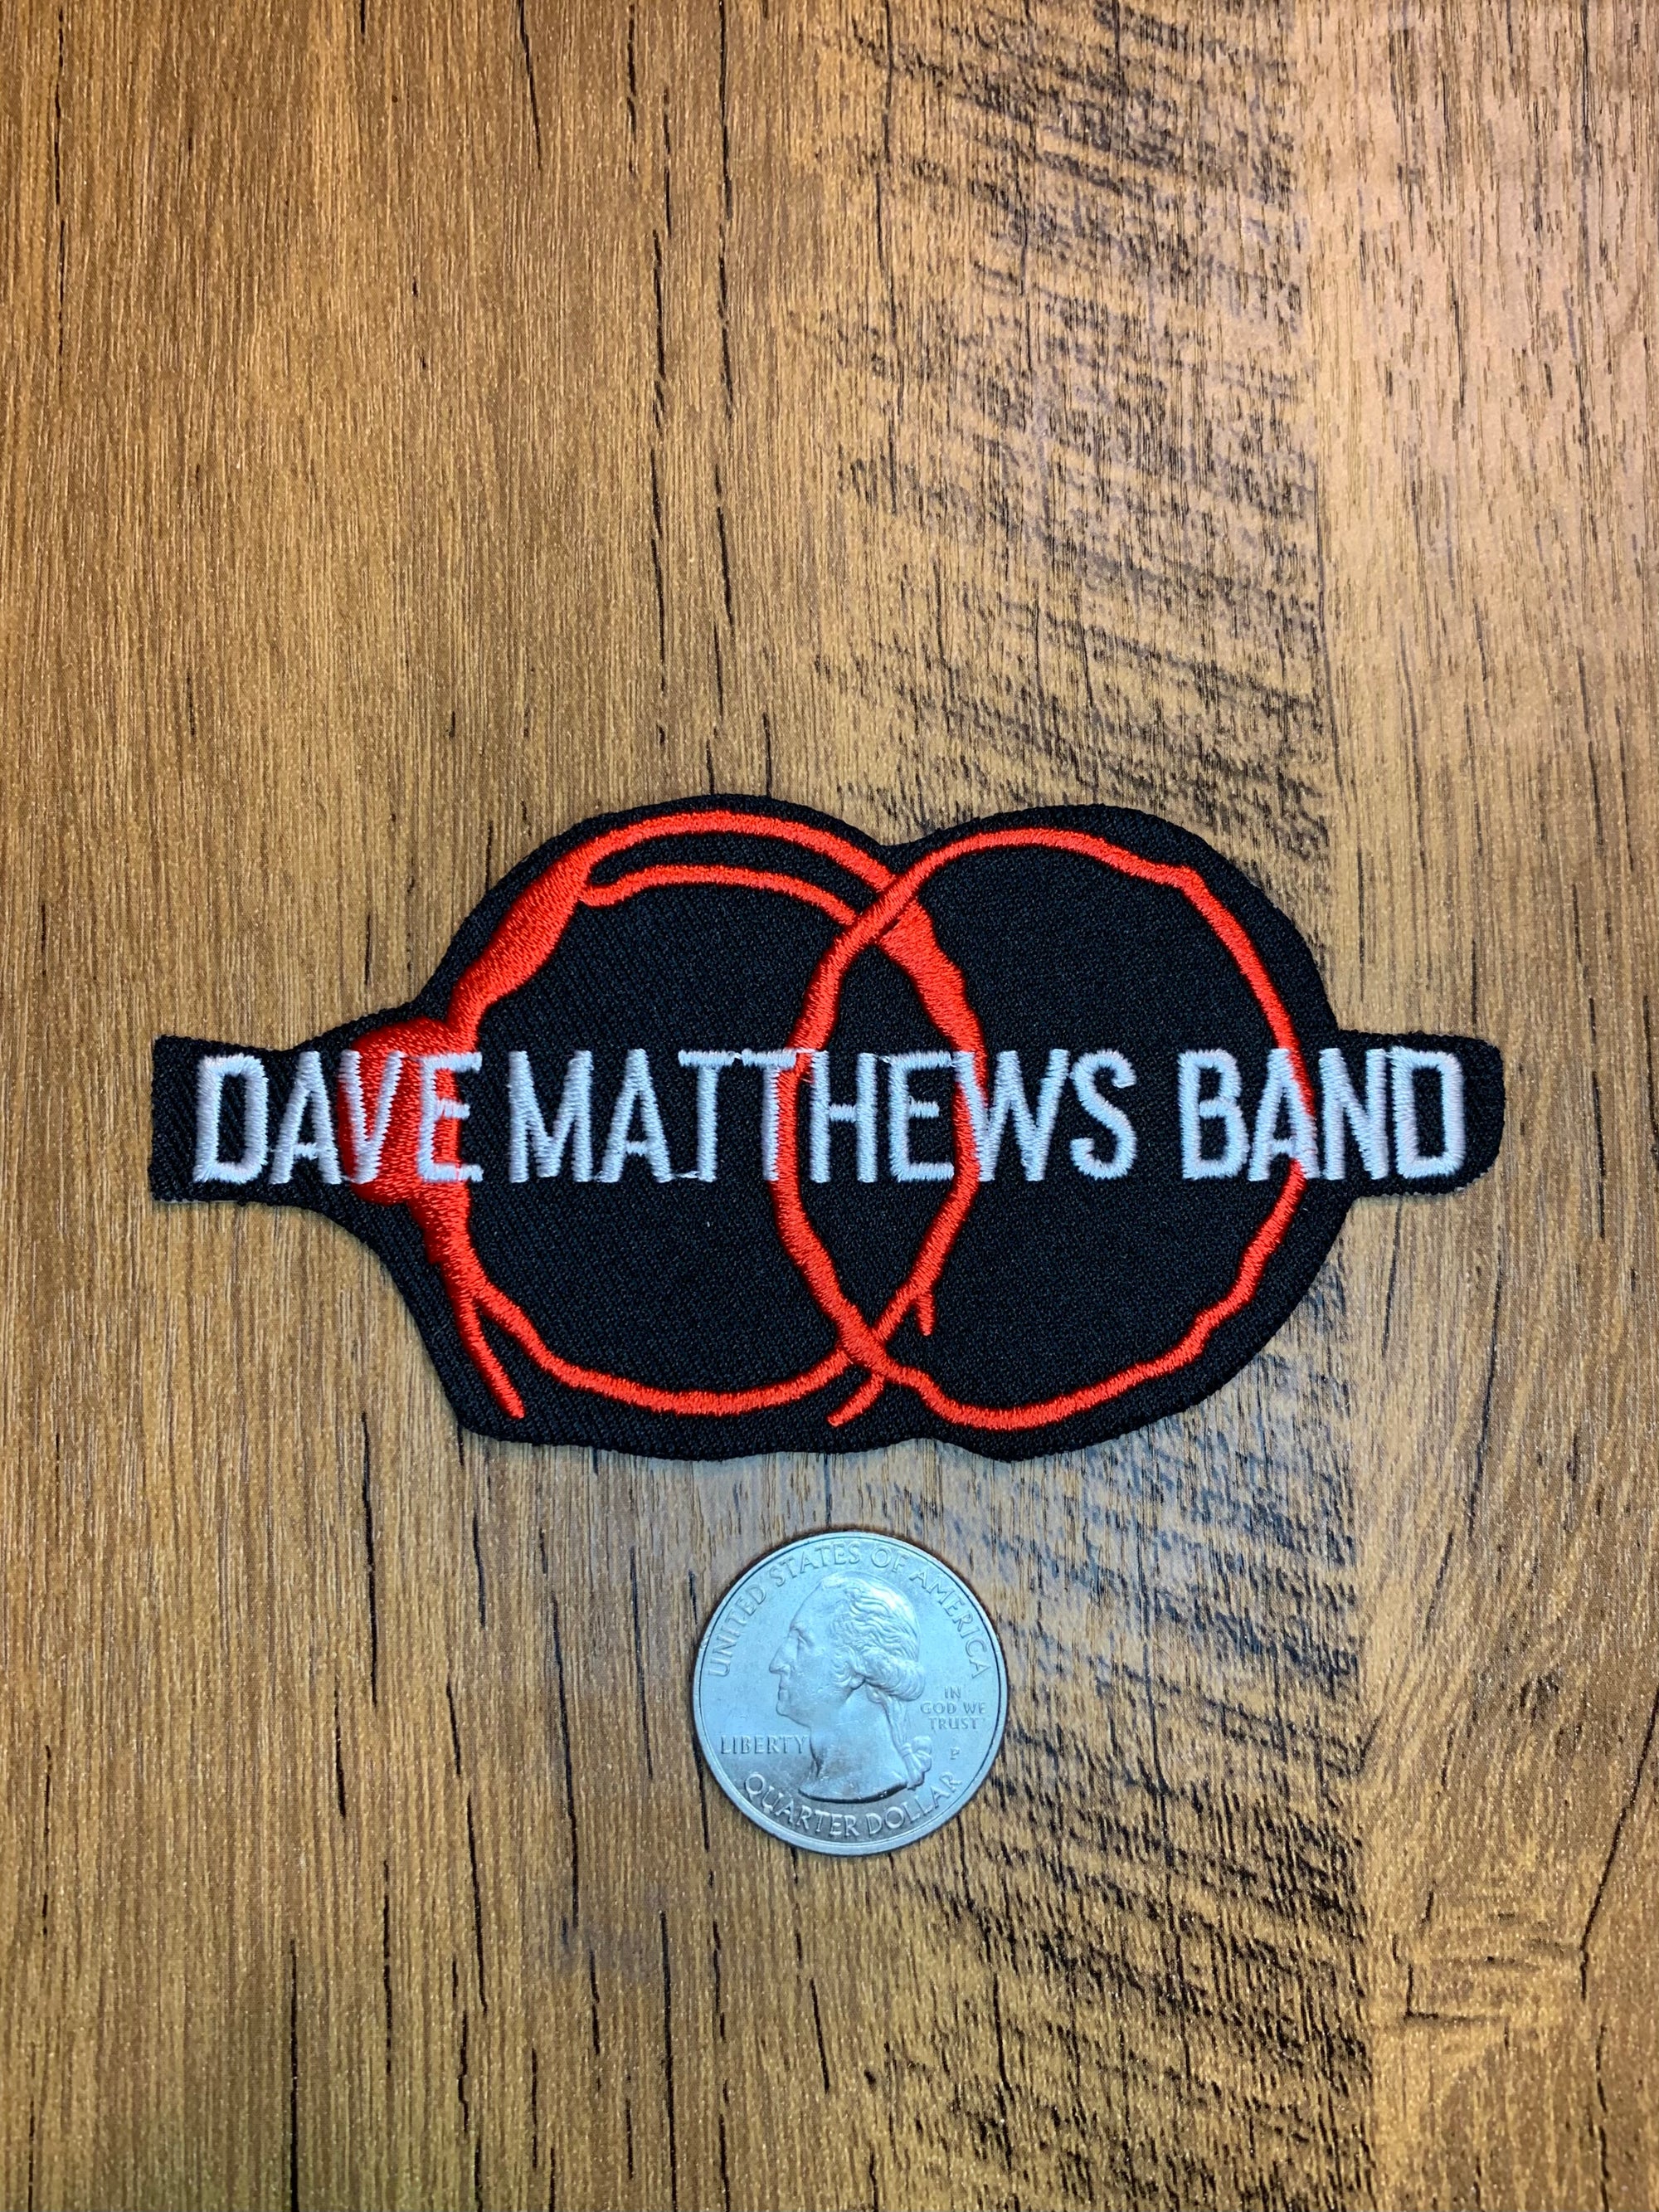 Vintage Dave Matthews Band